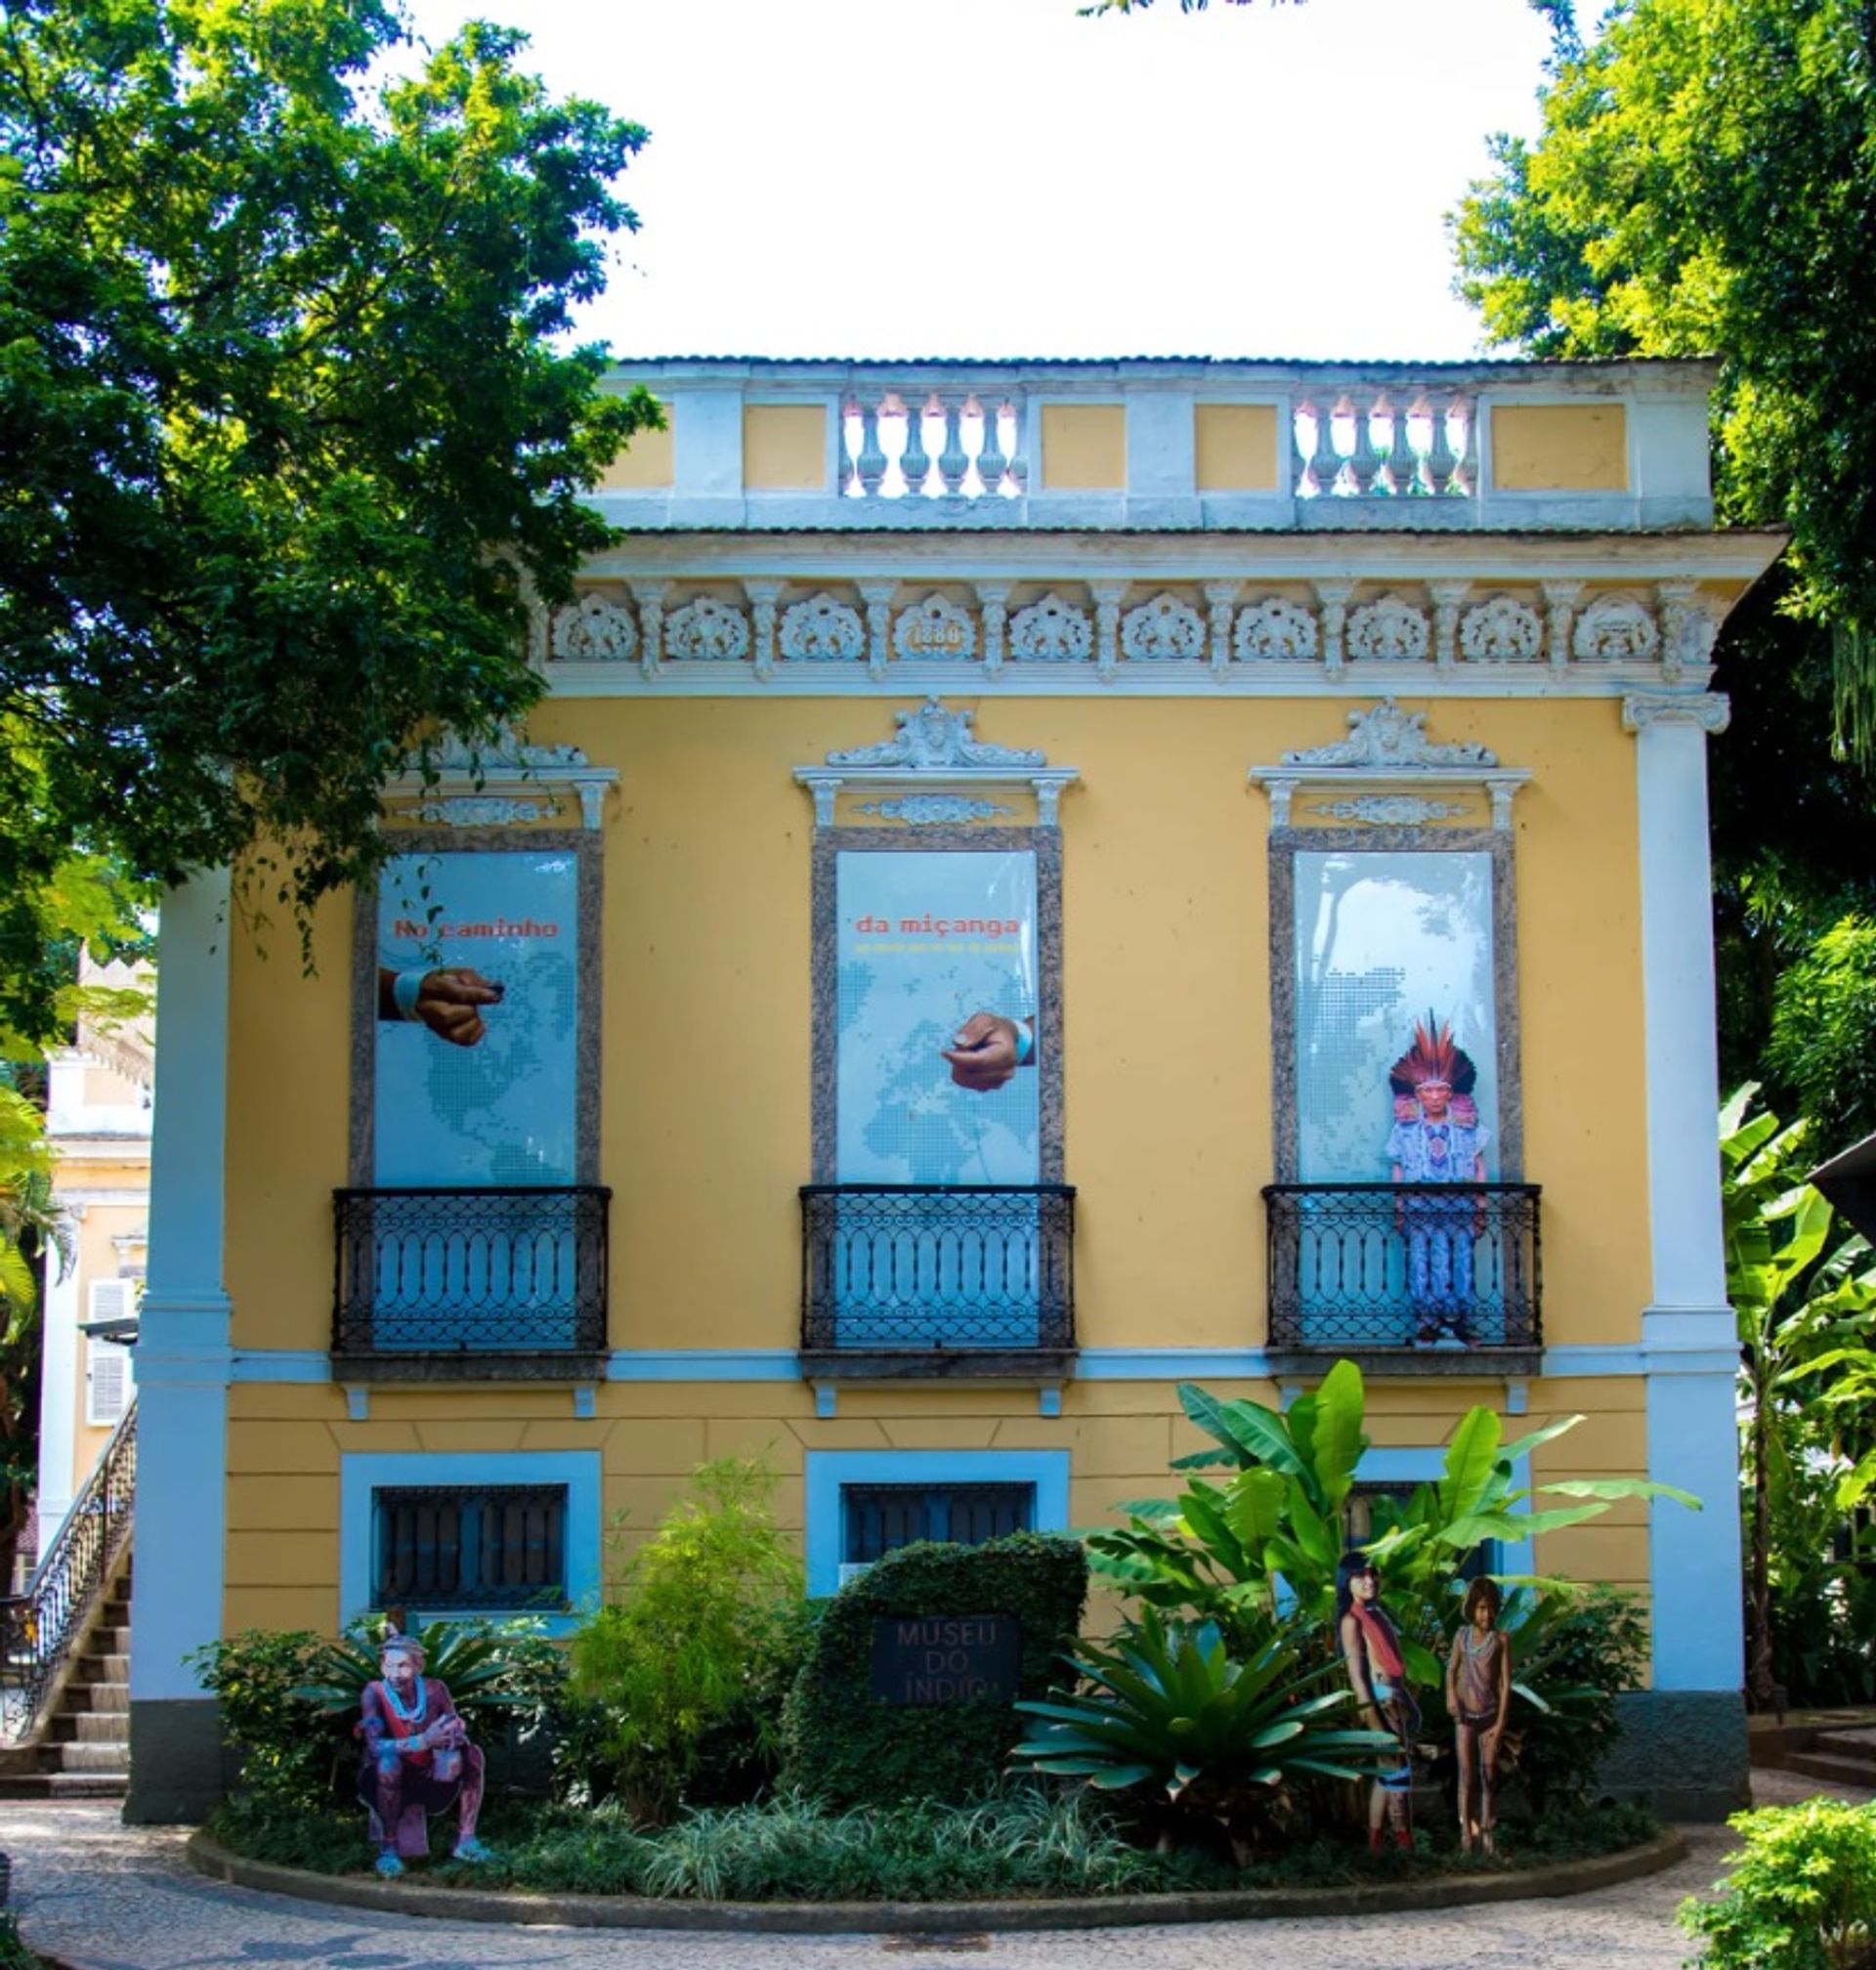 ה-Museu do Índio בריו דה ז'נרו צפוי להיפתח מחדש ב-2023.

צילום: Paulo Mumia/Museu do Índio